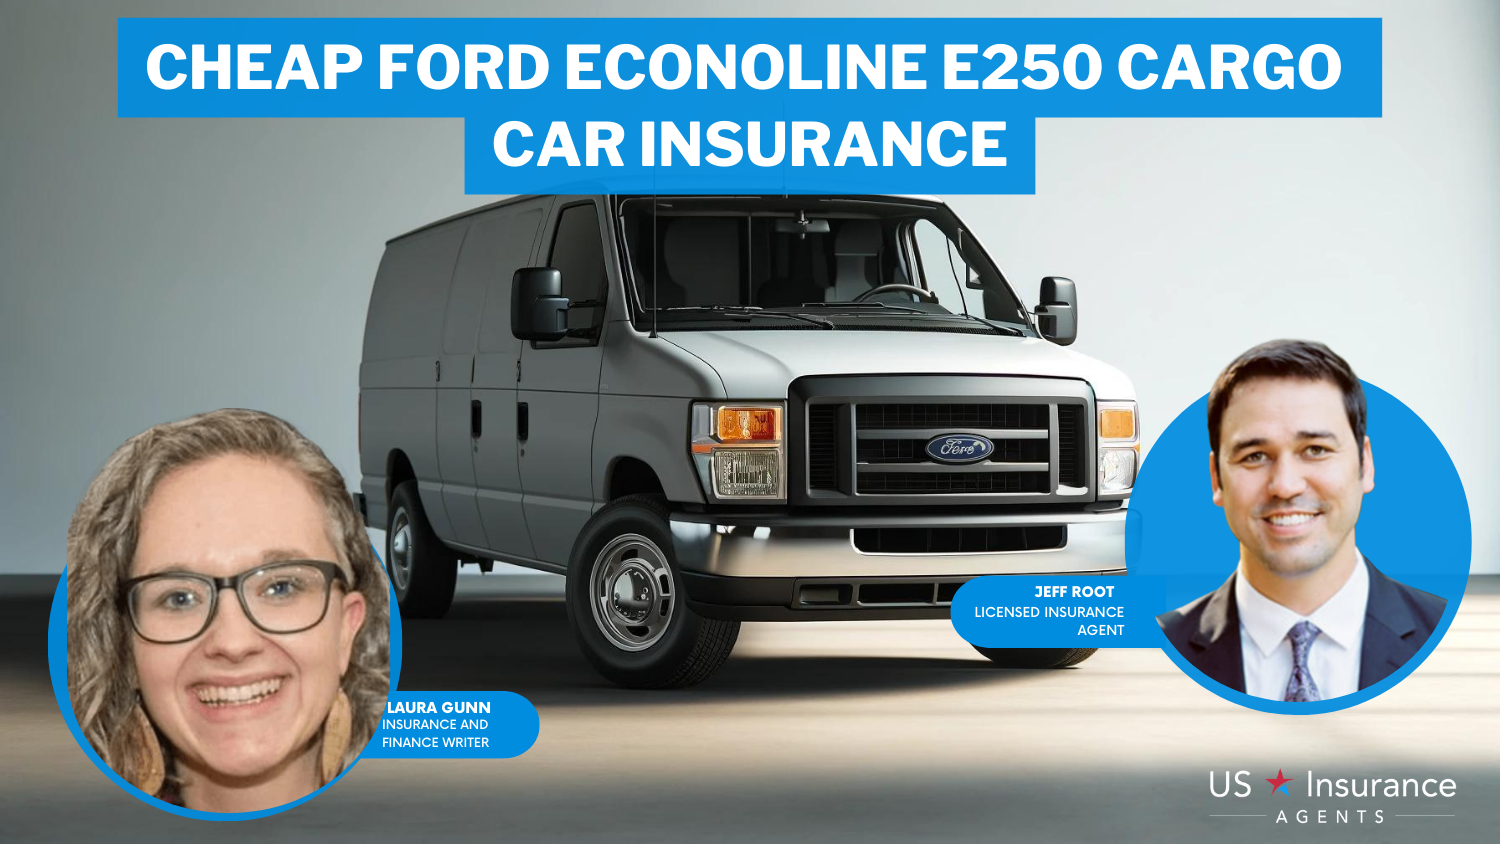 Cheap Ford Econoline E250 Cargo Car Insurance: Progressive, Travelers, and State Farm